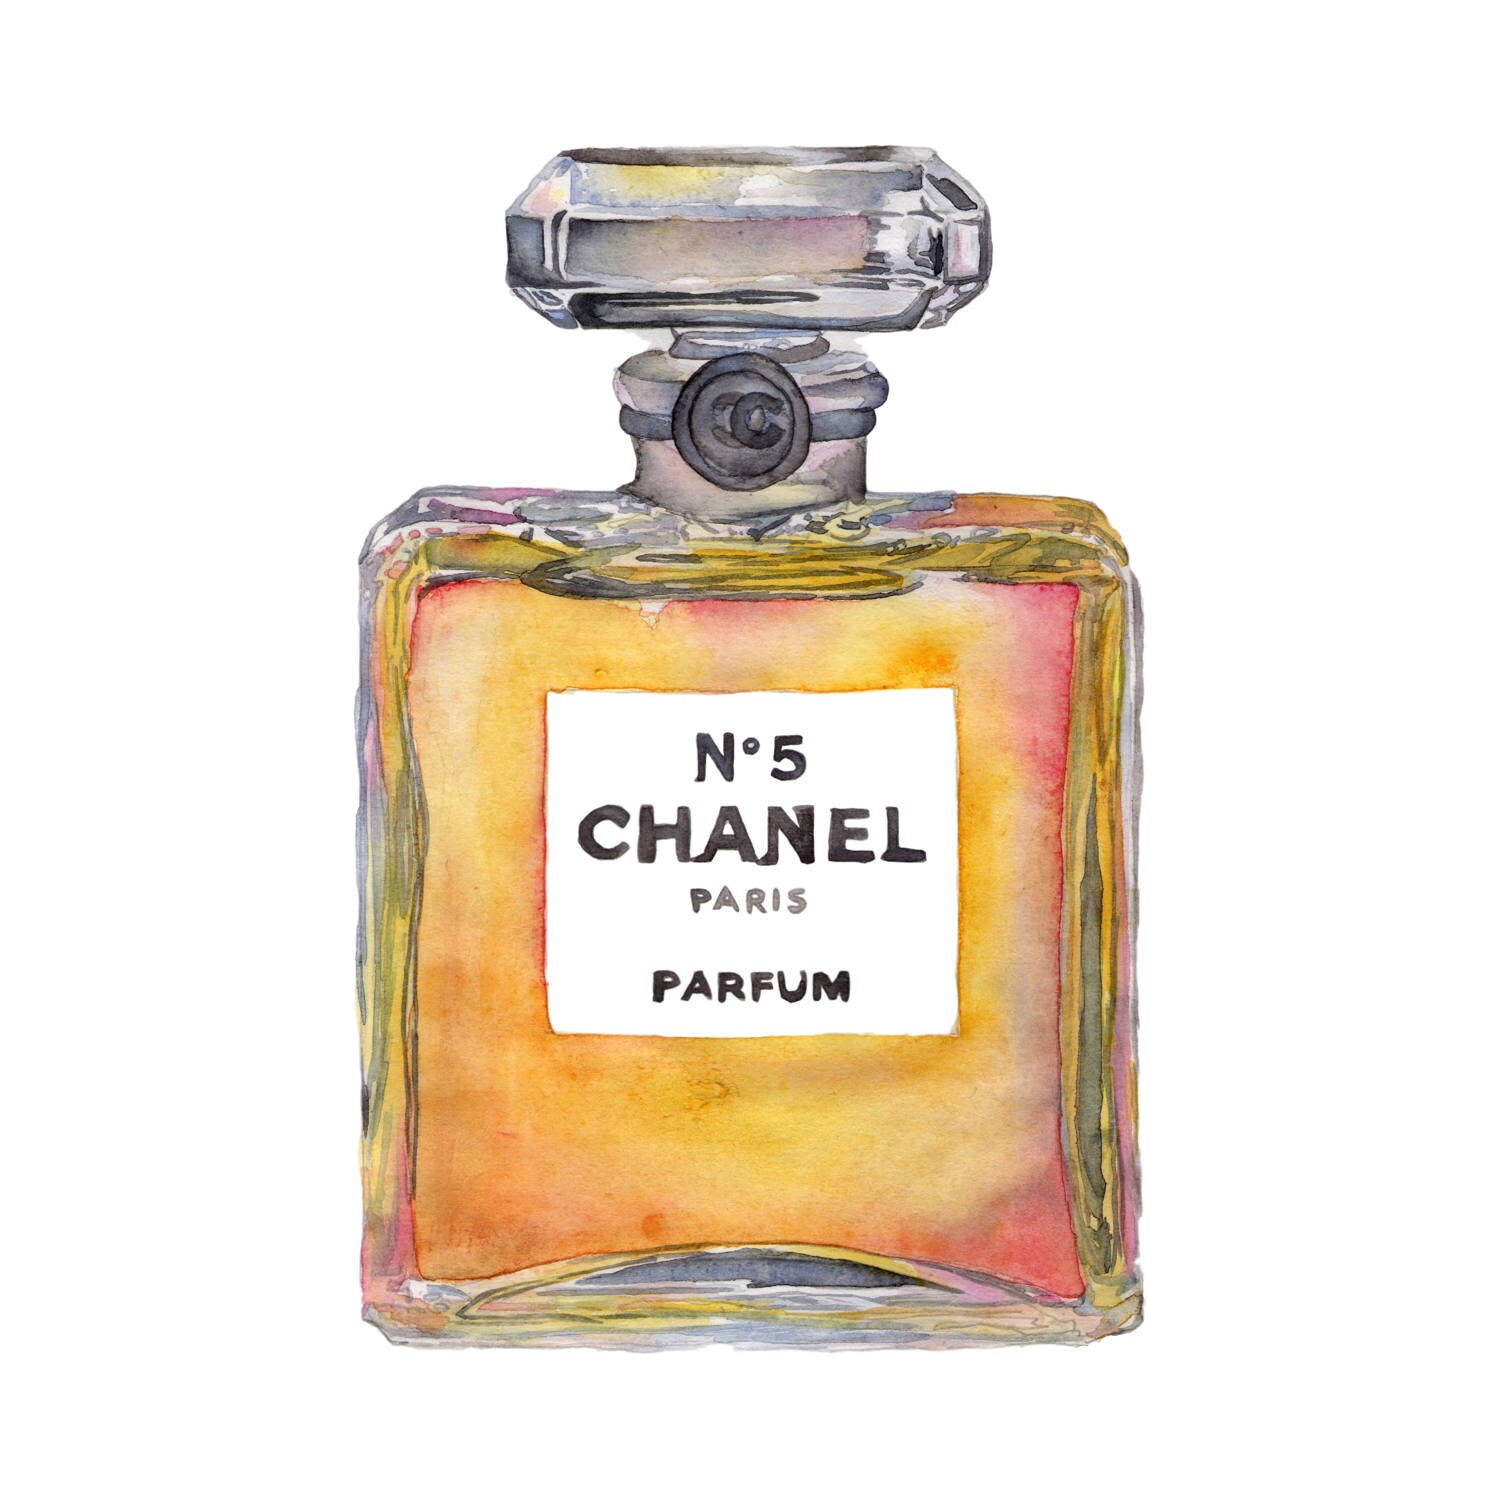 Watercolor Print Chanel No 5 Perfum Perfume 8.5 x 11 | Etsy